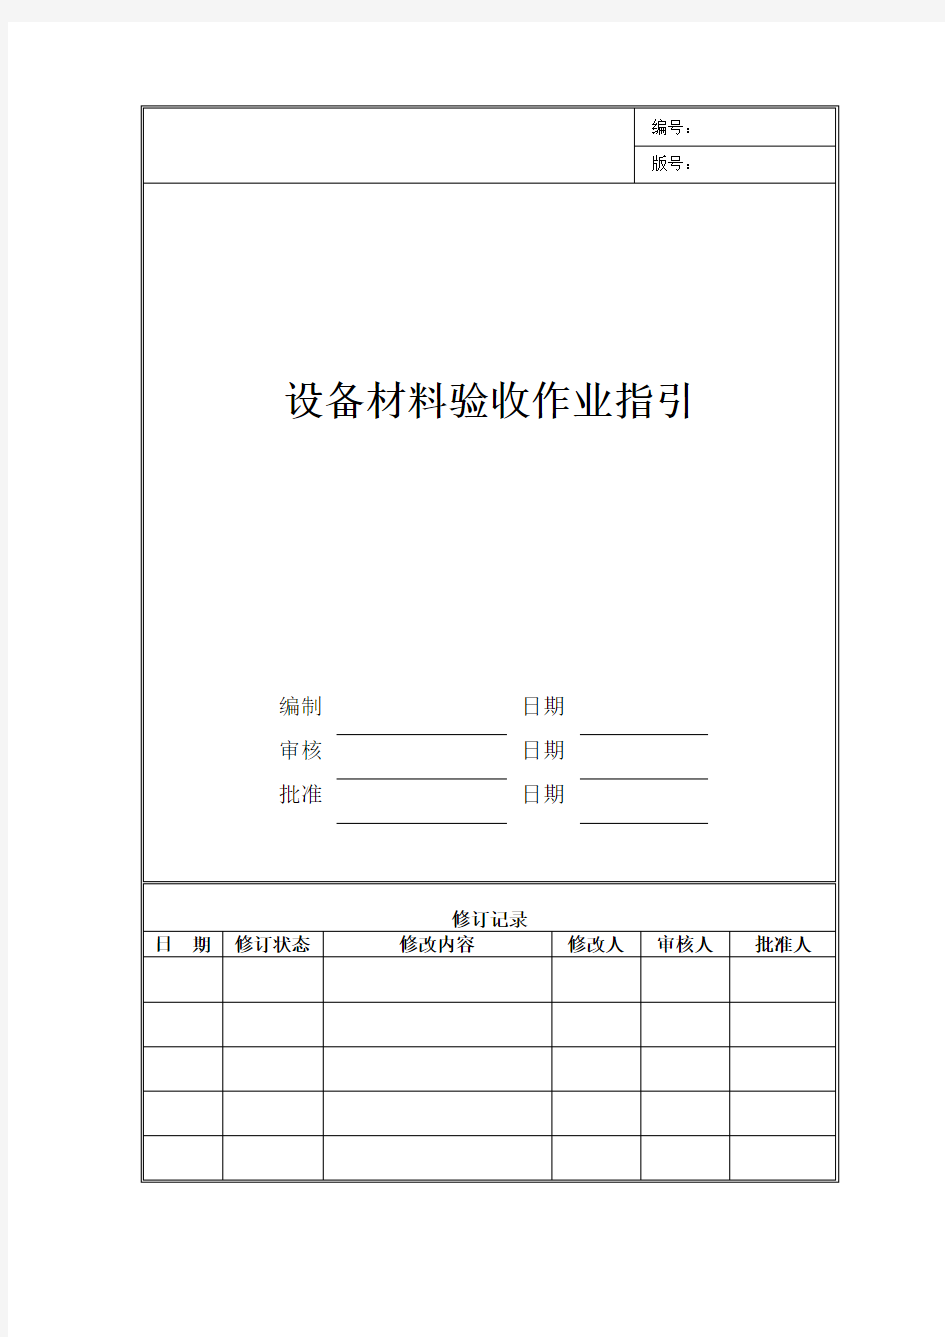 设备材料验收作业指引(表格)